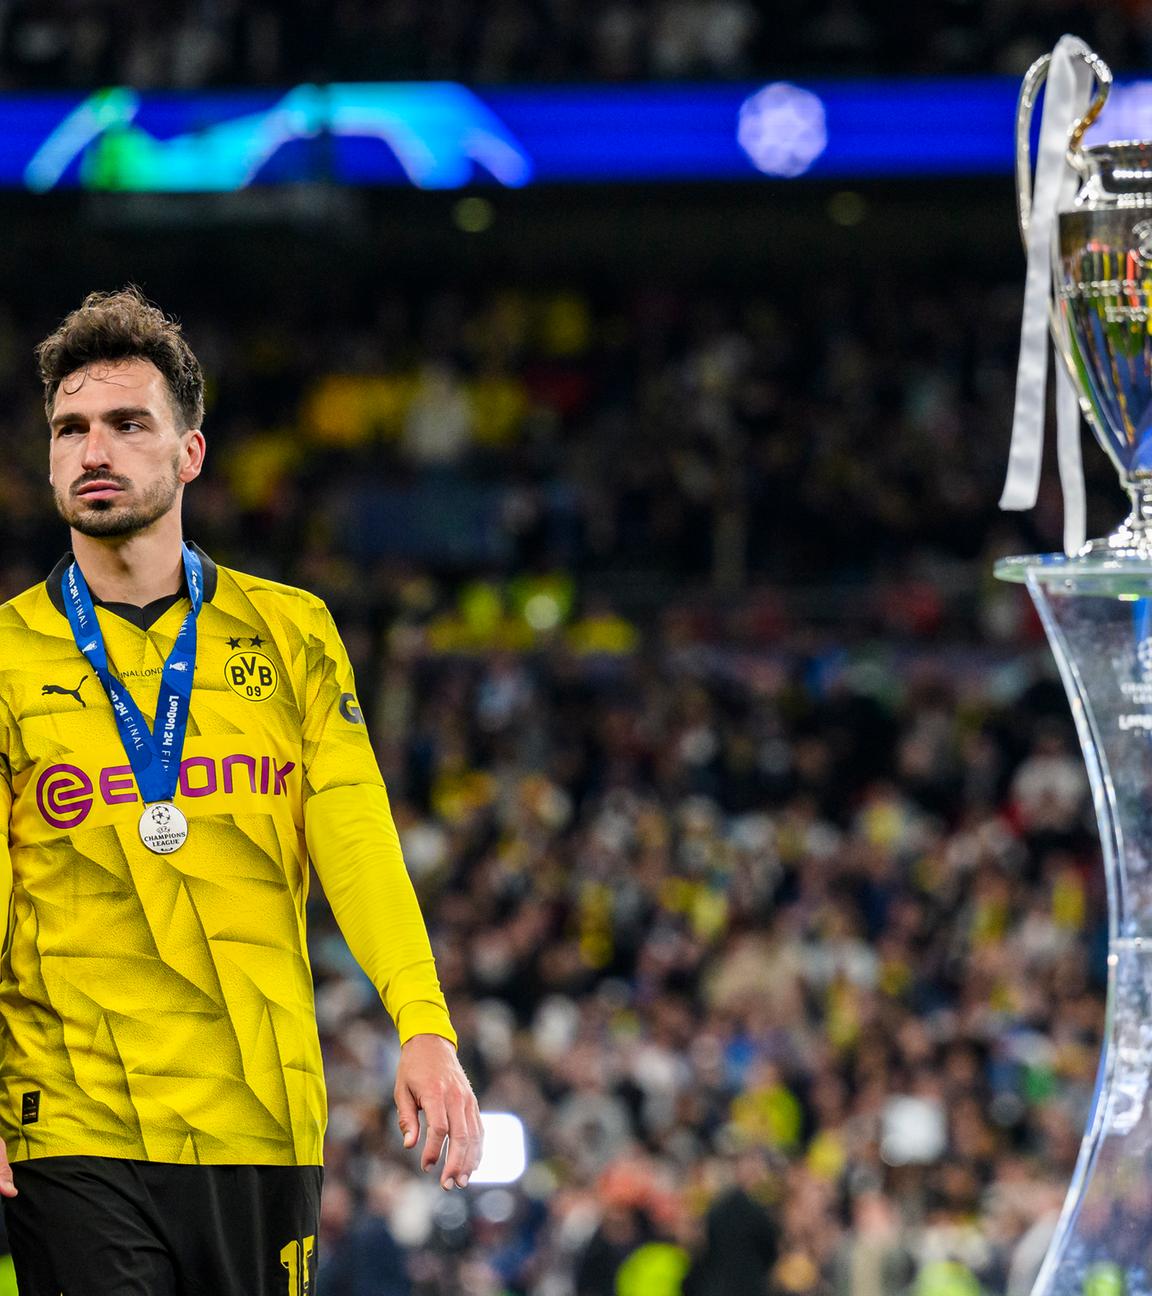 Großbritannien, London: Fußball: Champions League, Borussia Dortmund - Real Madrid: Dortmunds Mats Hummels geht bei der Siegerehrung am Pokal der UEFA Champions League vorbei.